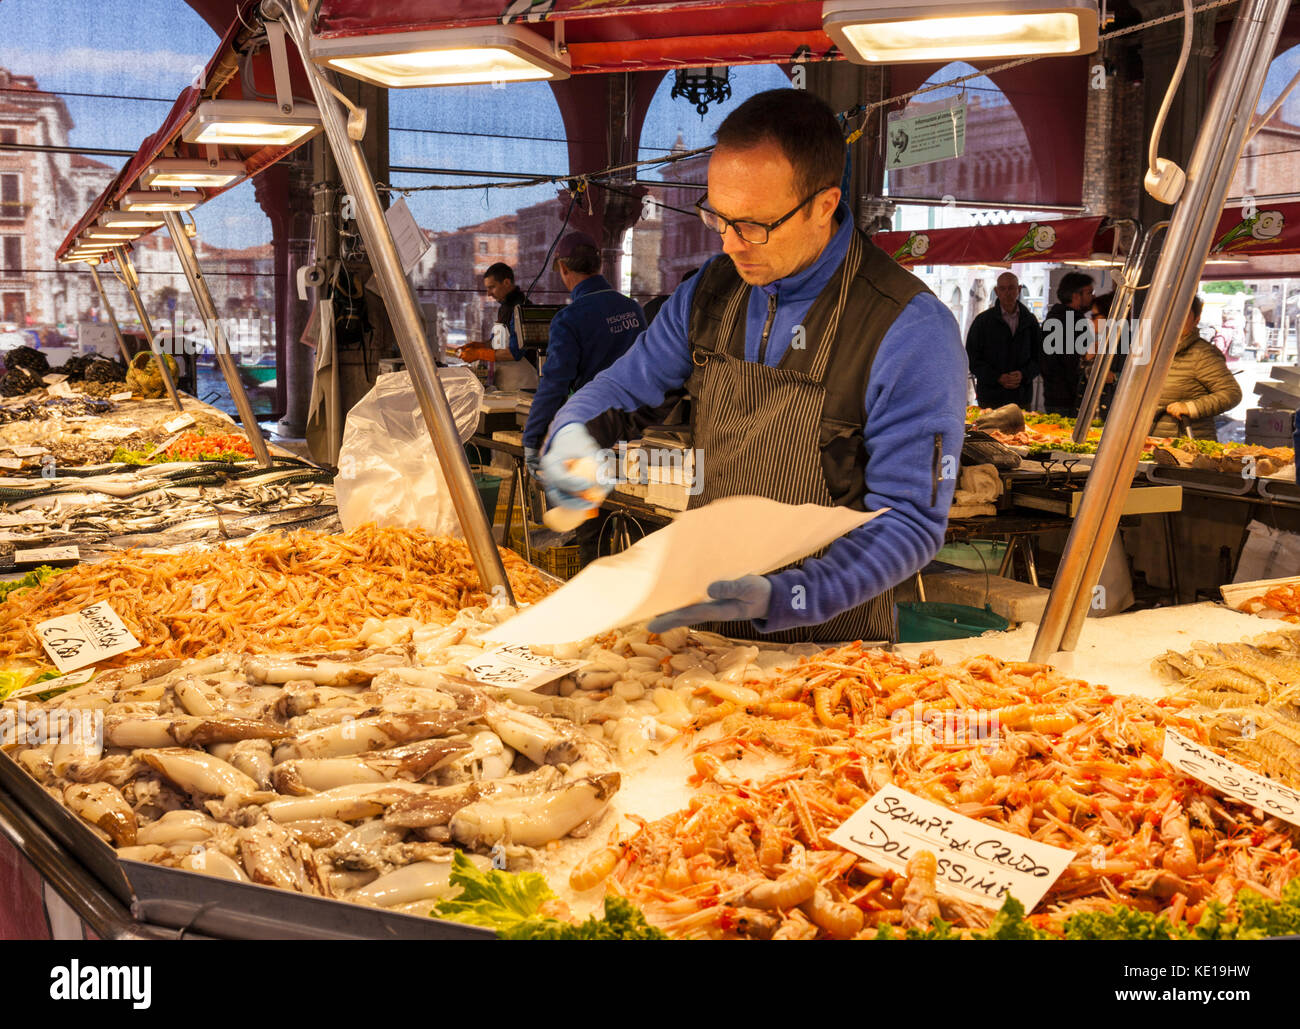 Venise ITALIE VENISE poissonnier la vente de poissons et fruits de mer frais du marché, étals de vente du poisson frais dans le marché du Rialto Venise Italie Europe de l'UE Banque D'Images